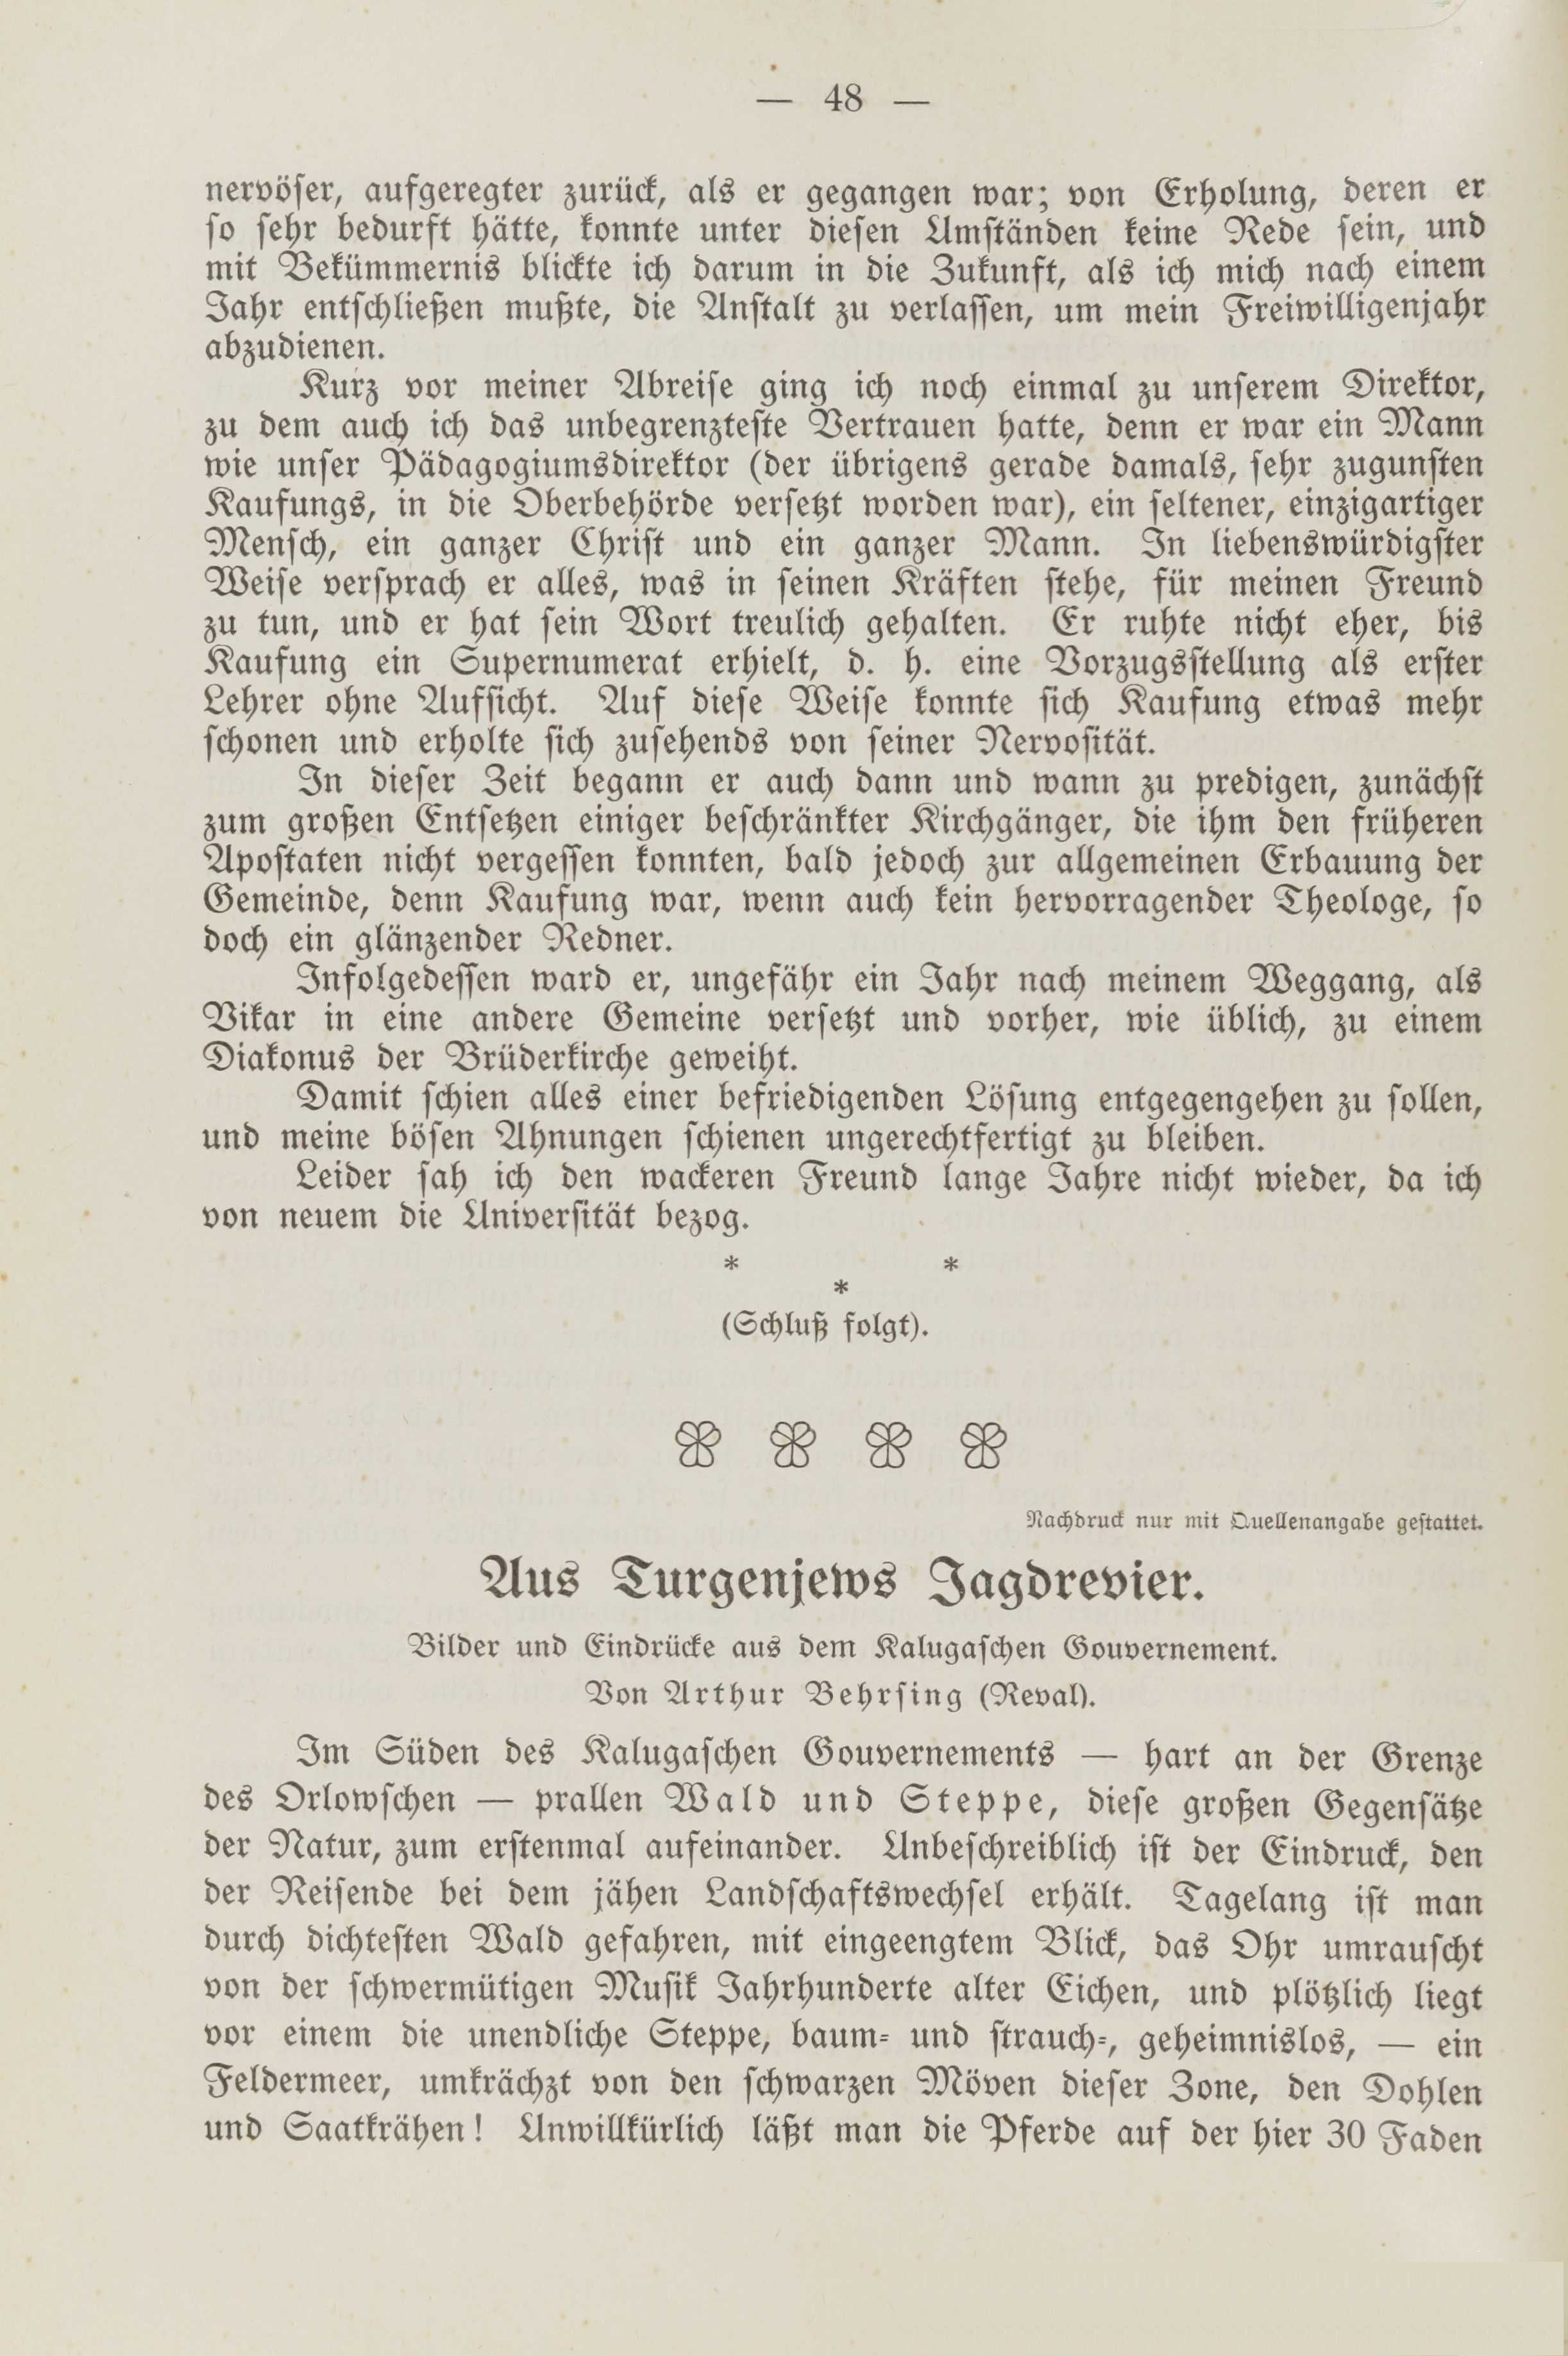 Deutsche Monatsschrift für Russland [2] (1913) | 52. (48) Основной текст